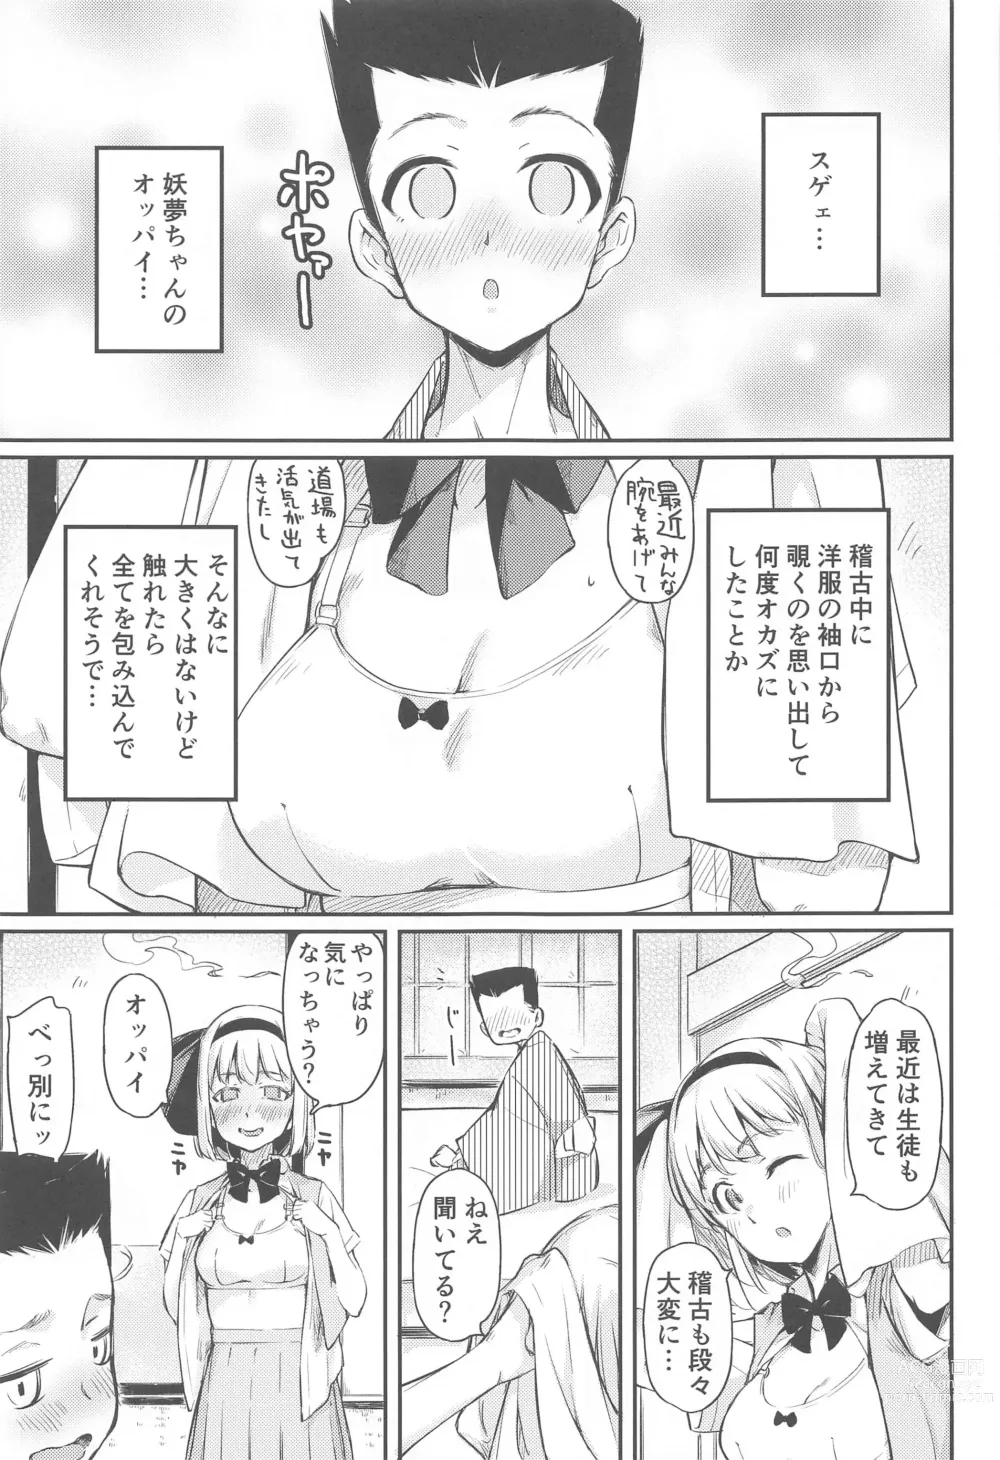 Page 4 of doujinshi Niwashi no Musume wa Minna ni Aisaretai.